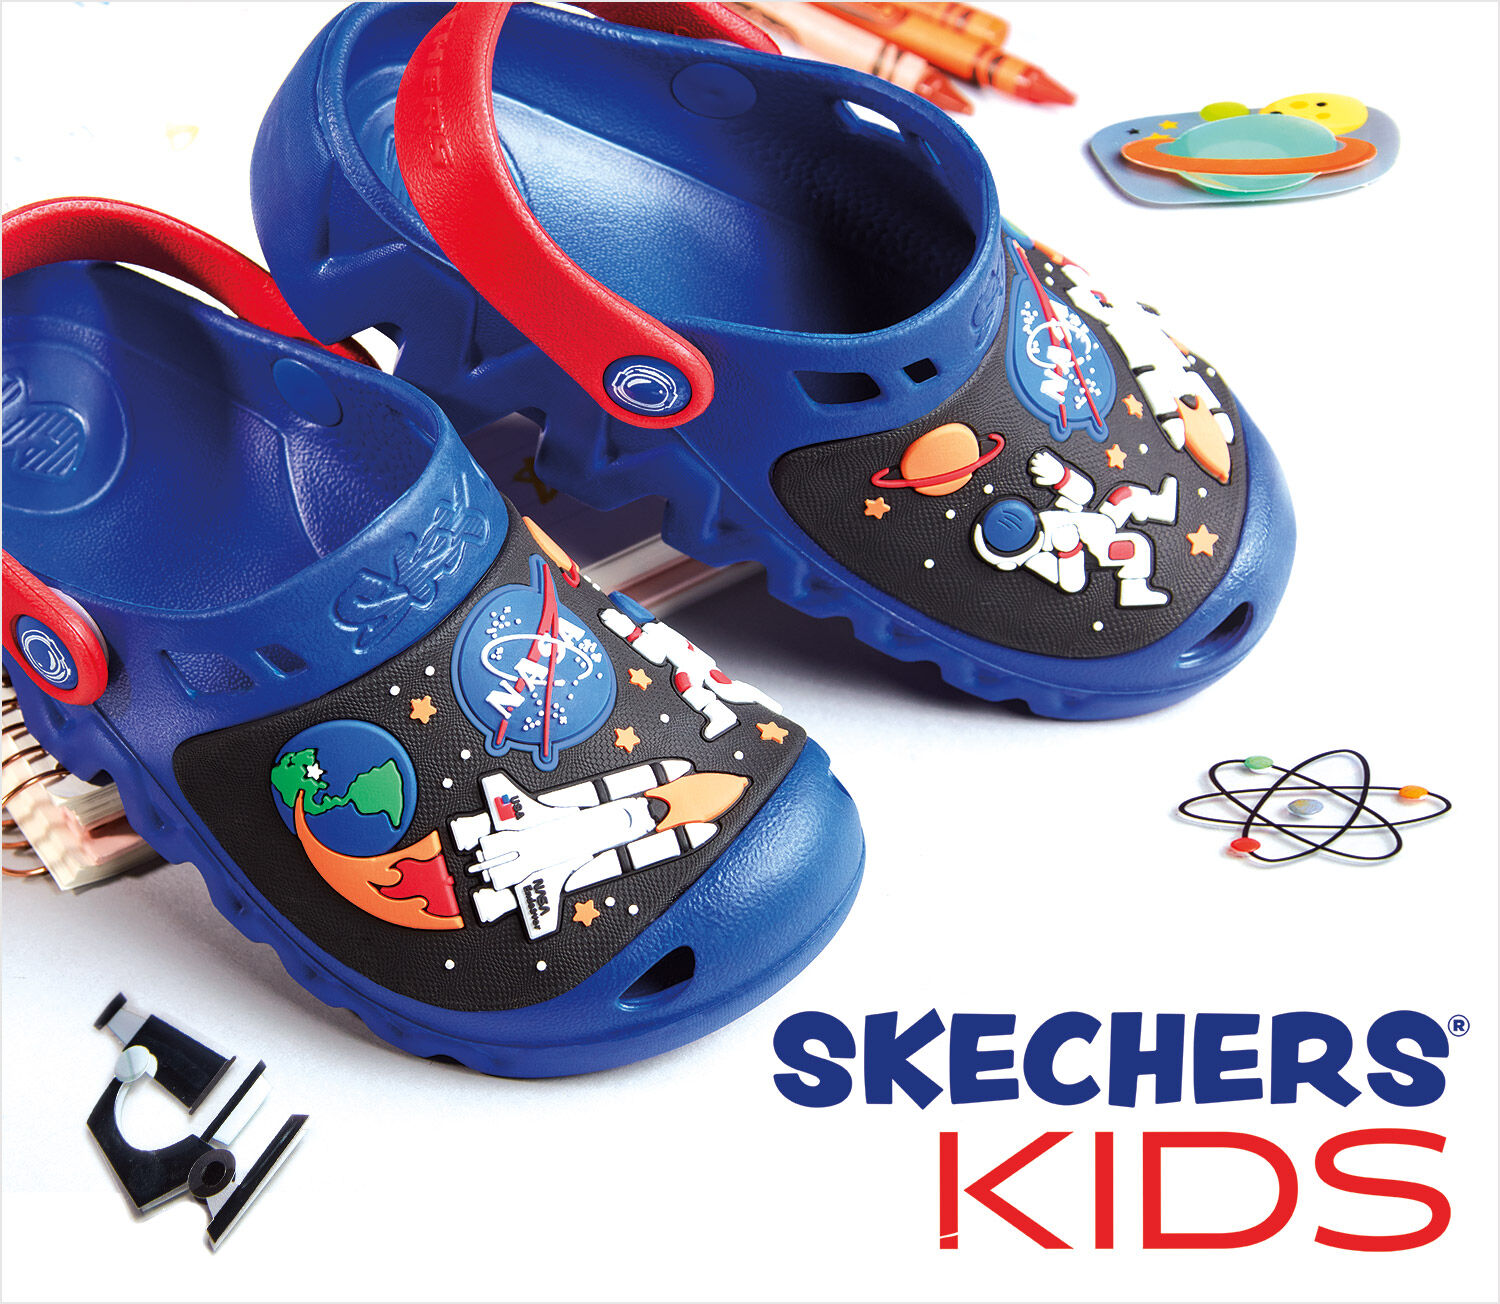 skechers kids shoes